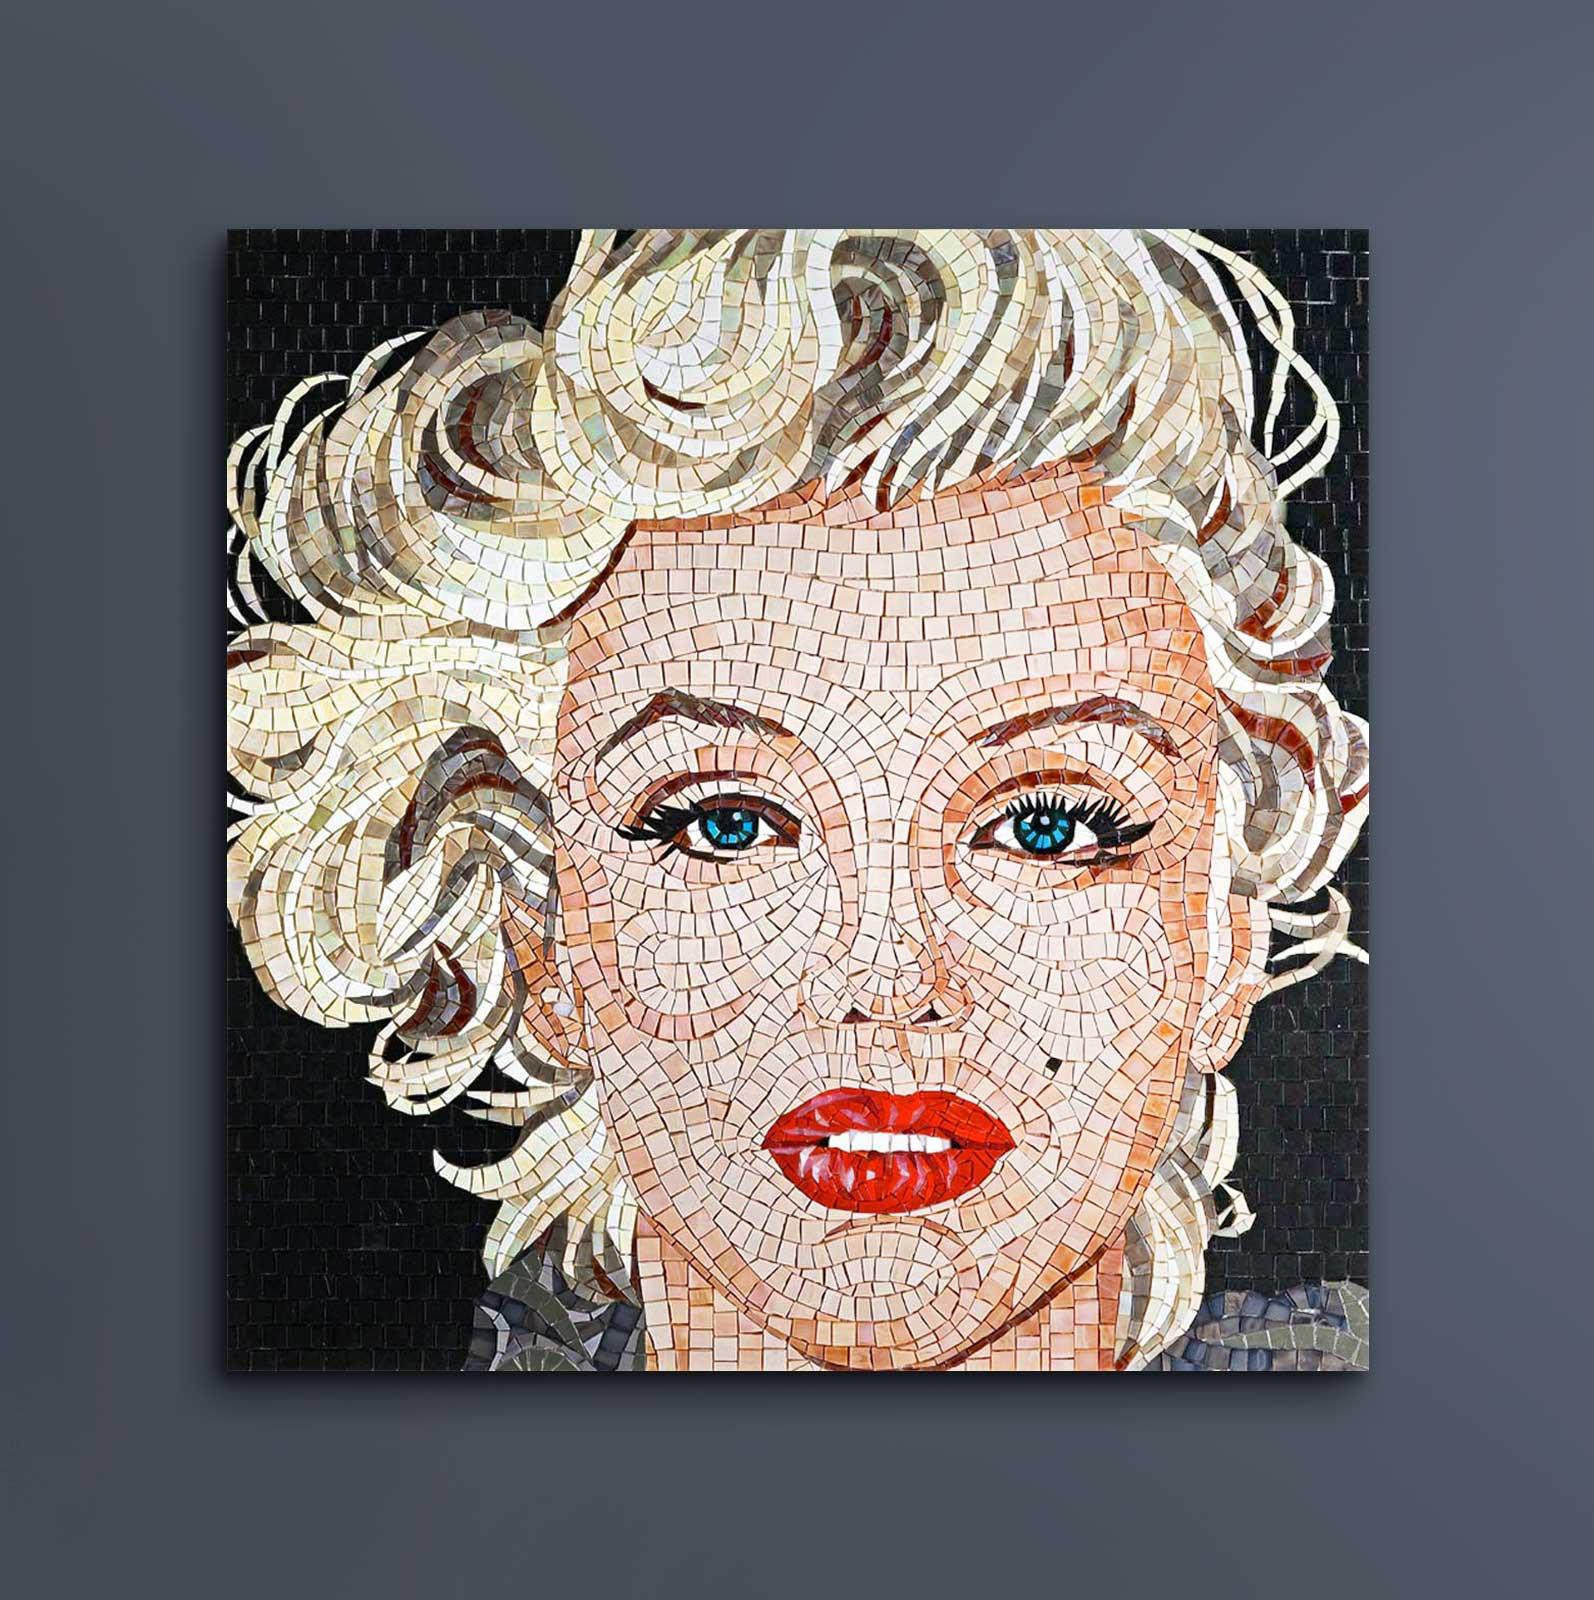 Dieses farbenfrohe Pop-Inspirationsmosaik ist eine Ode an die beliebte und einzigartige Marilyn Monroe. Die Diva ist nach wie vor eine der bedeutendsten Schauspielerinnen auf der Leinwand. Umgeben von mehrfarbigen Elementen posiert Monroe sinnlich